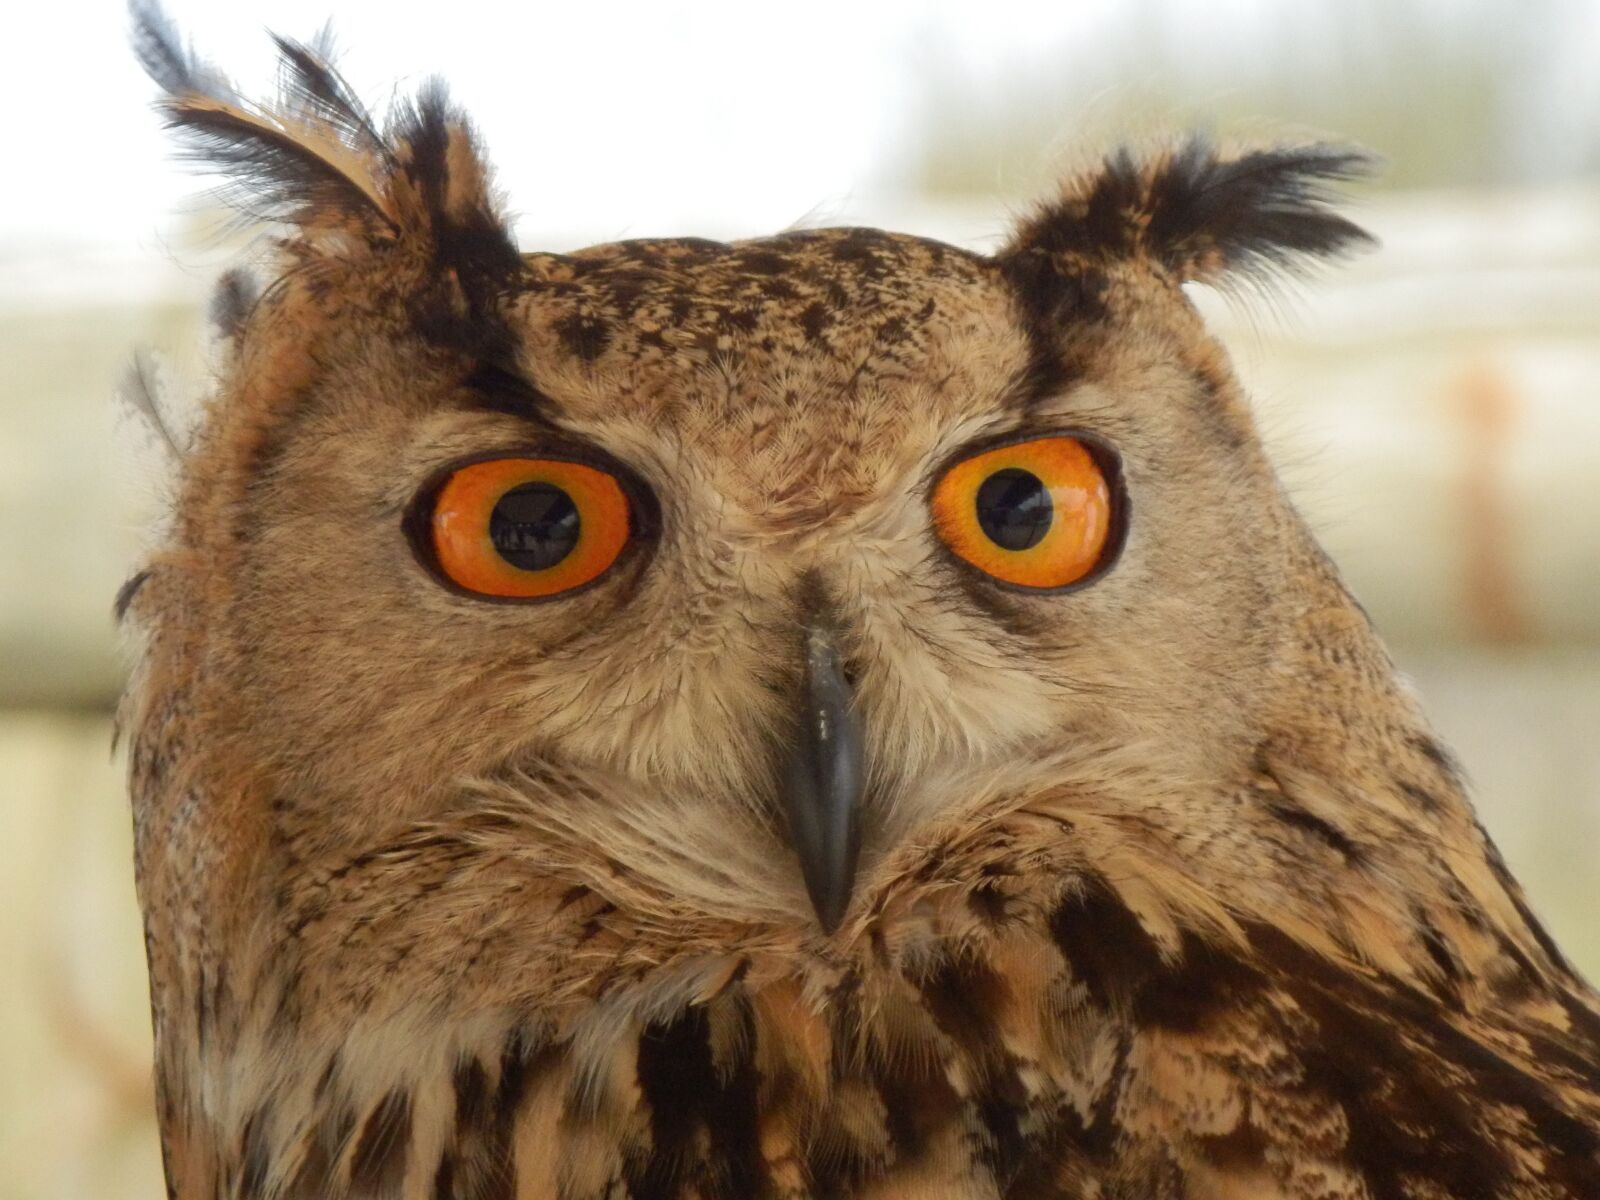 Olympus SZ-31MR sample photo. Owl, eyes, animal photography